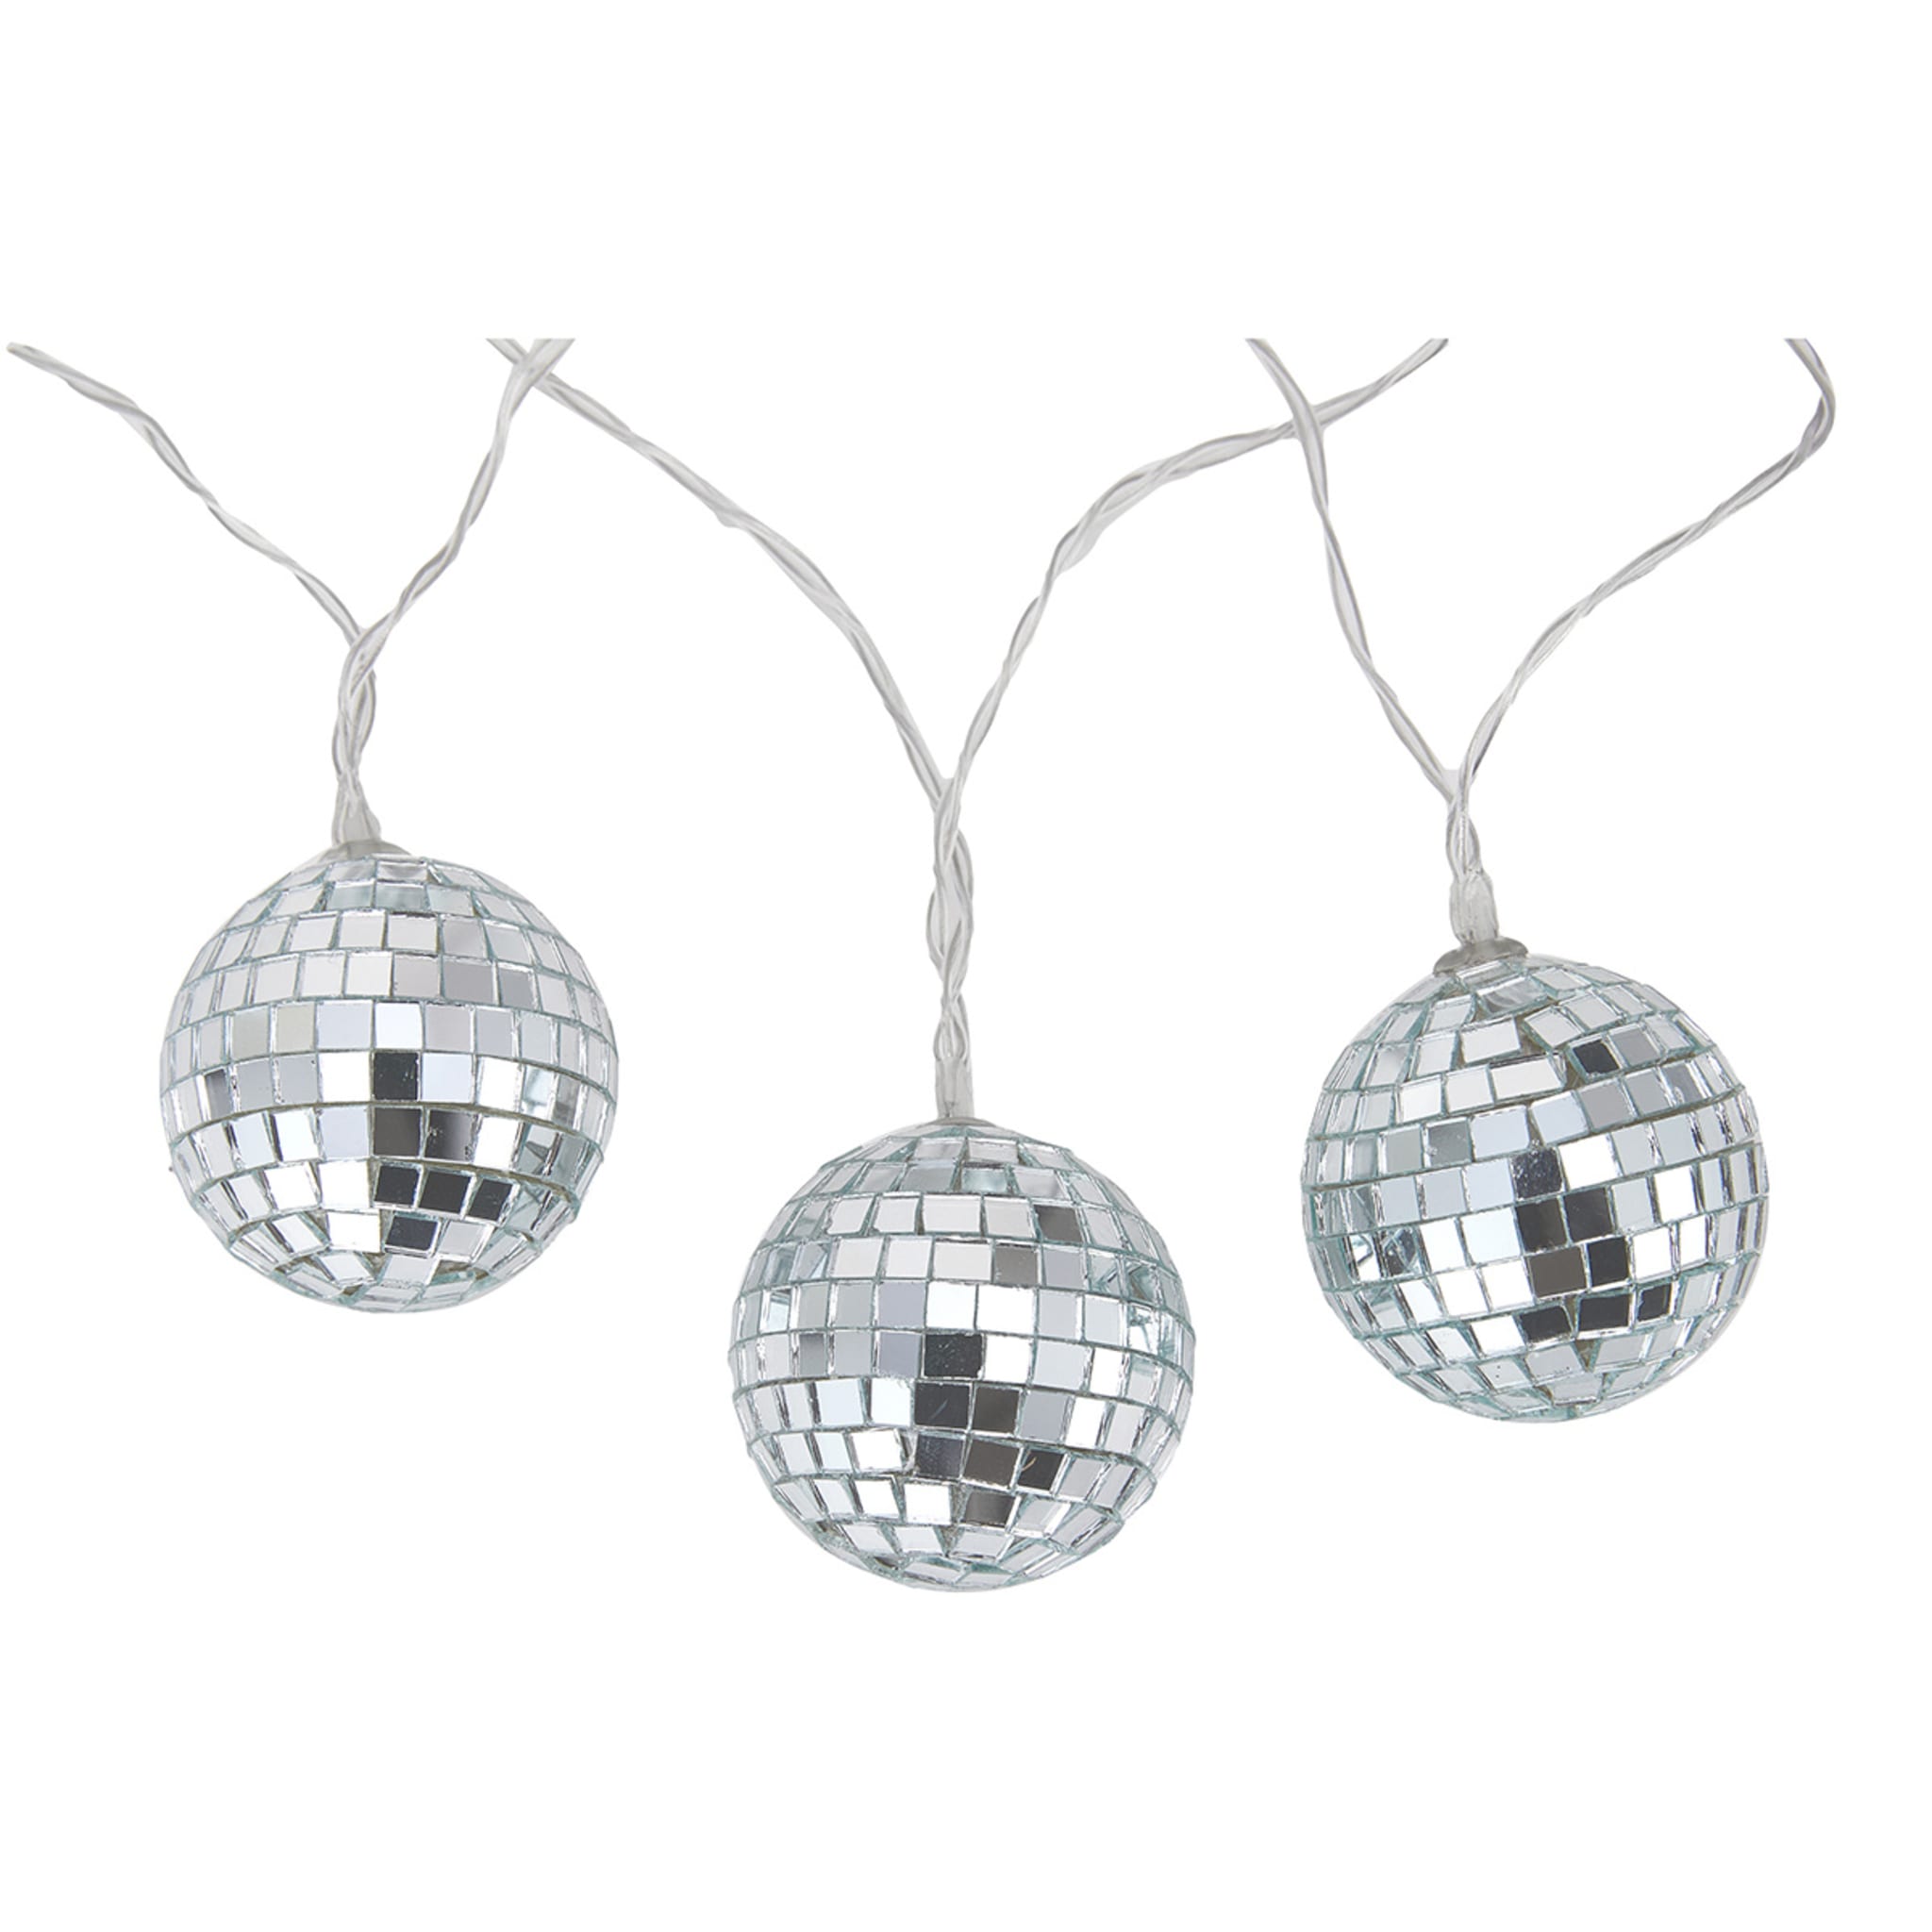 Disco Ball String Light - Kmart